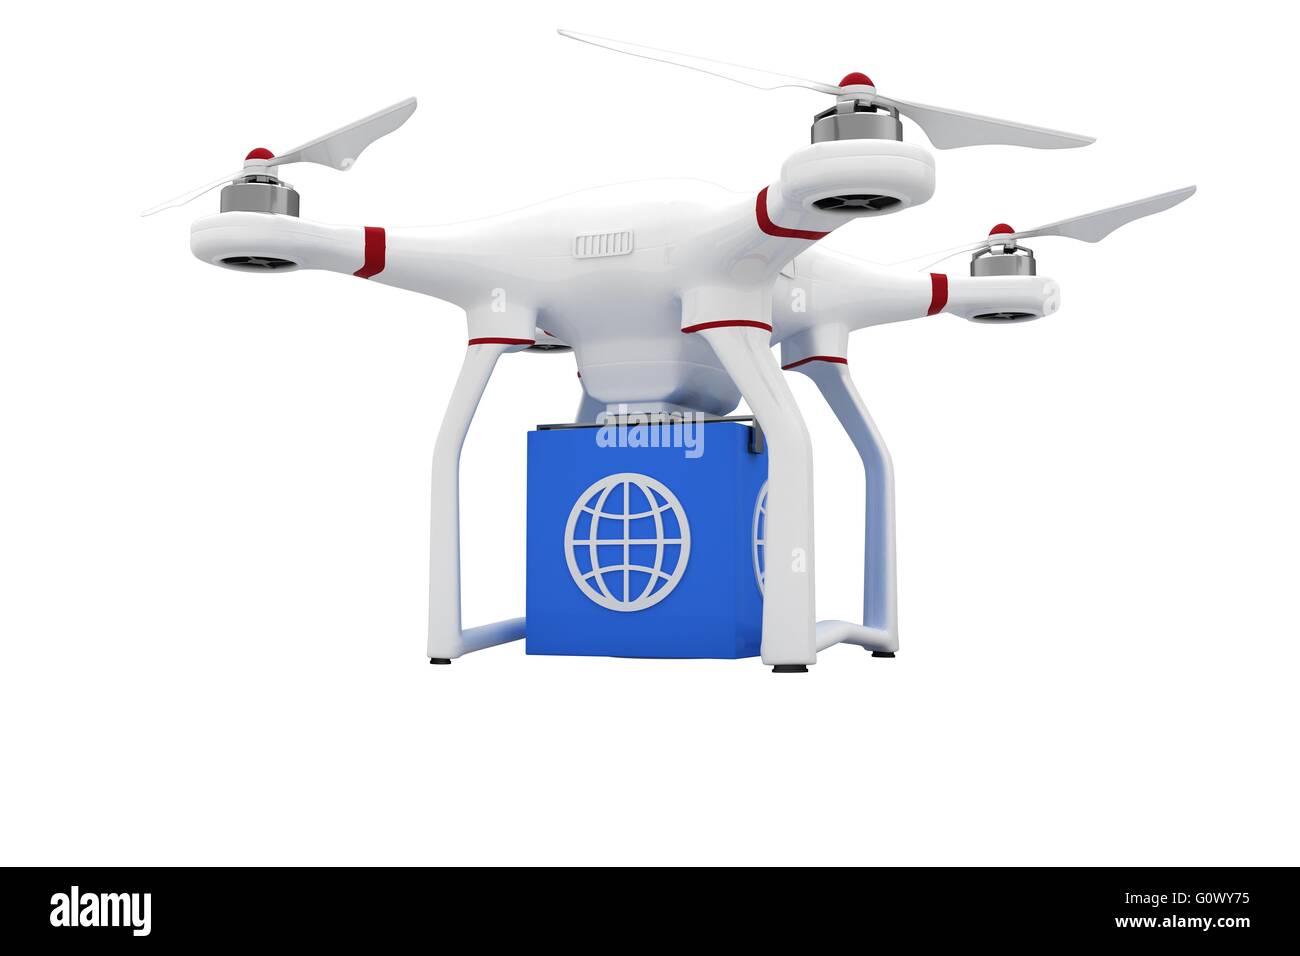 Image de drone Banque d'images détourées - Alamy